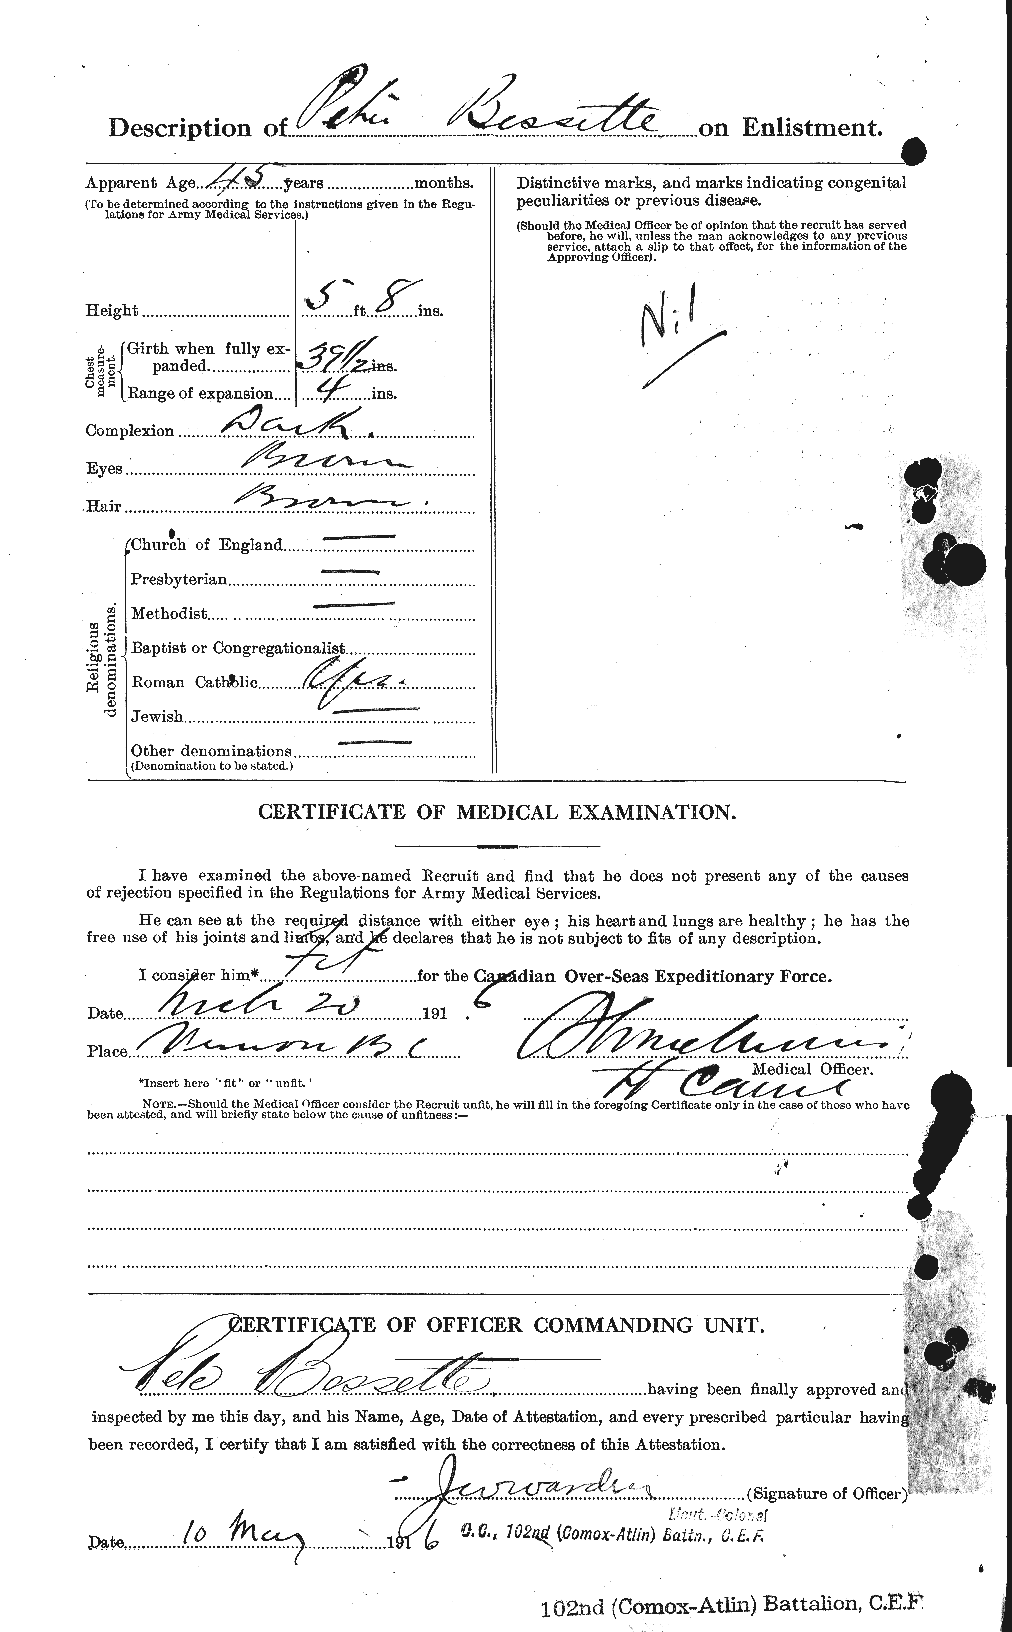 Dossiers du Personnel de la Première Guerre mondiale - CEC 240187b